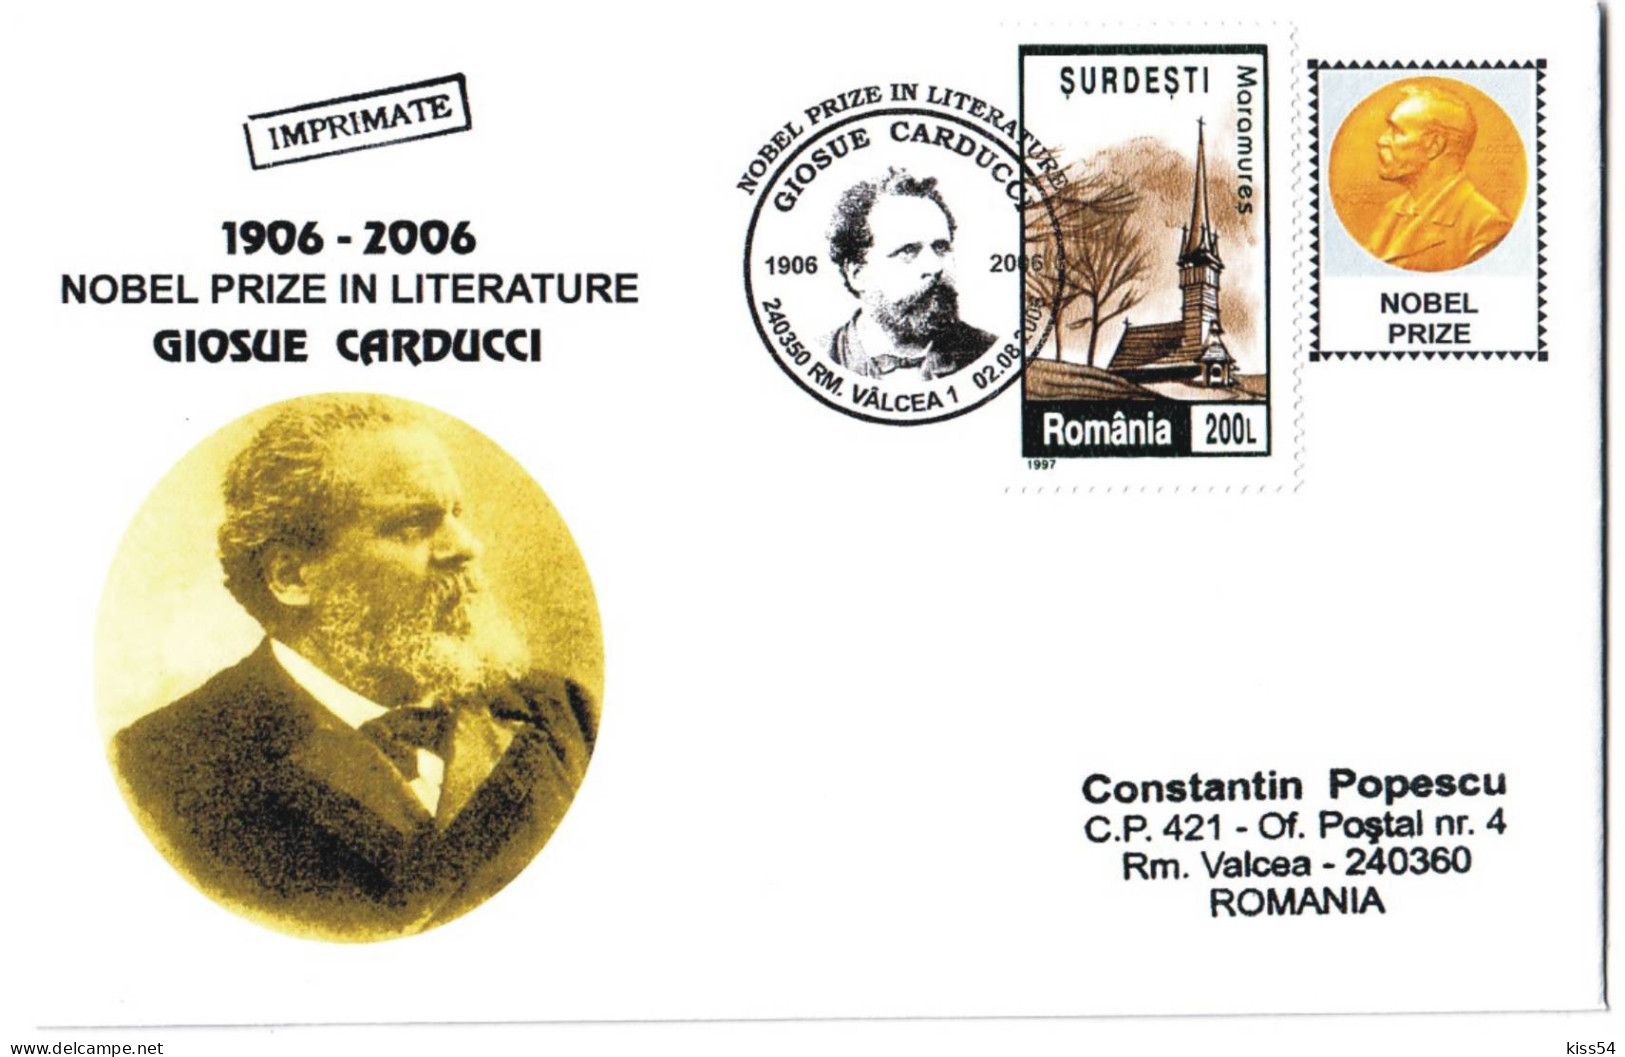 COV 25 - 410 GIOSUE CARDUCCI, Romania, Nobel Prize In Literature - Cover - 2006 - Prix Nobel